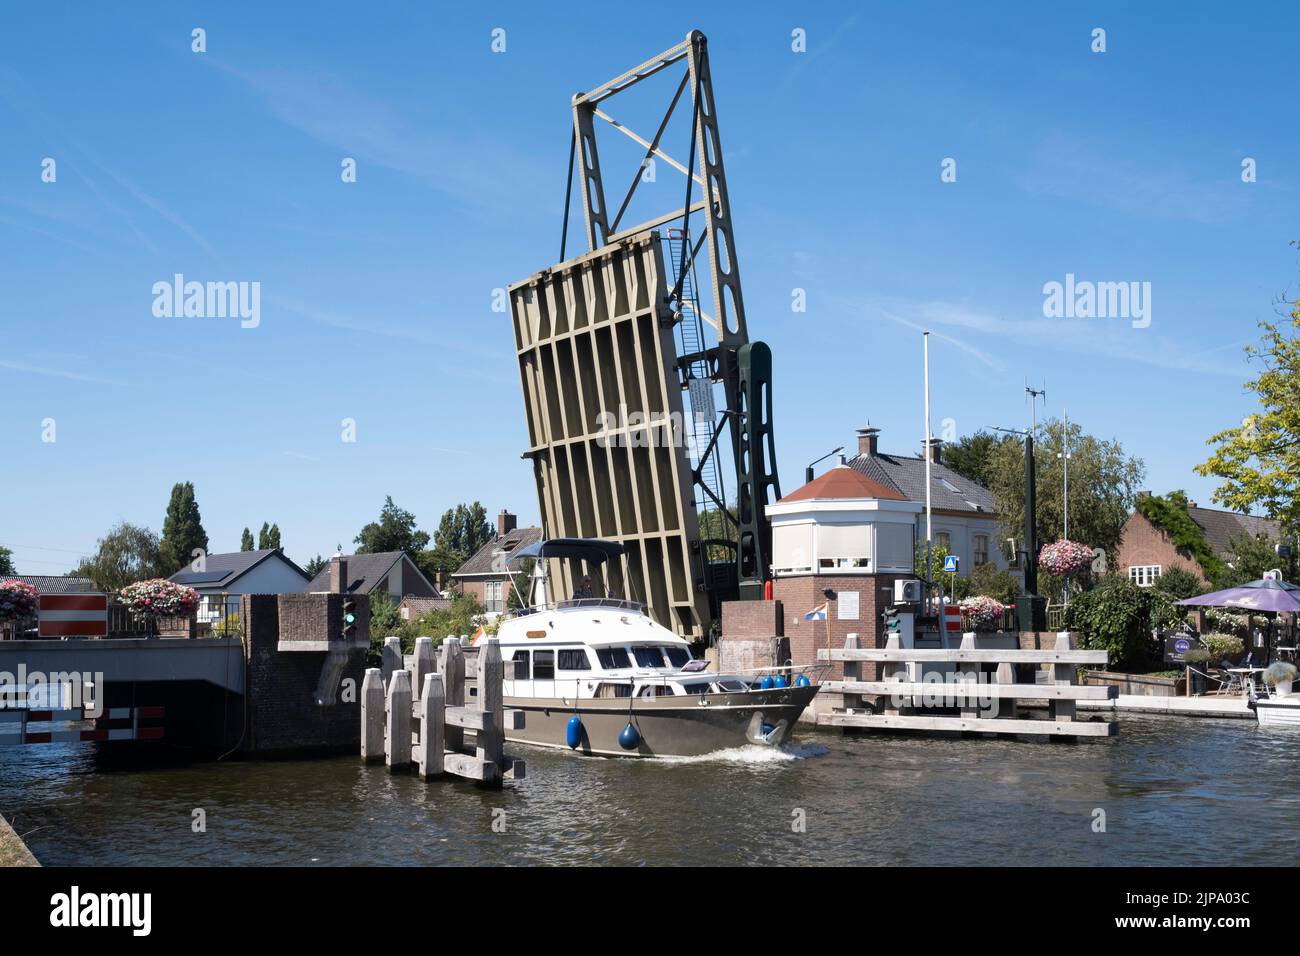 El barco navega por el río 'Oude Rijn' (antiguo Rin) bajo el puente levadizo de acero abierto en el pueblo de Koudekerk aan den Rijn, Países Bajos Foto de stock